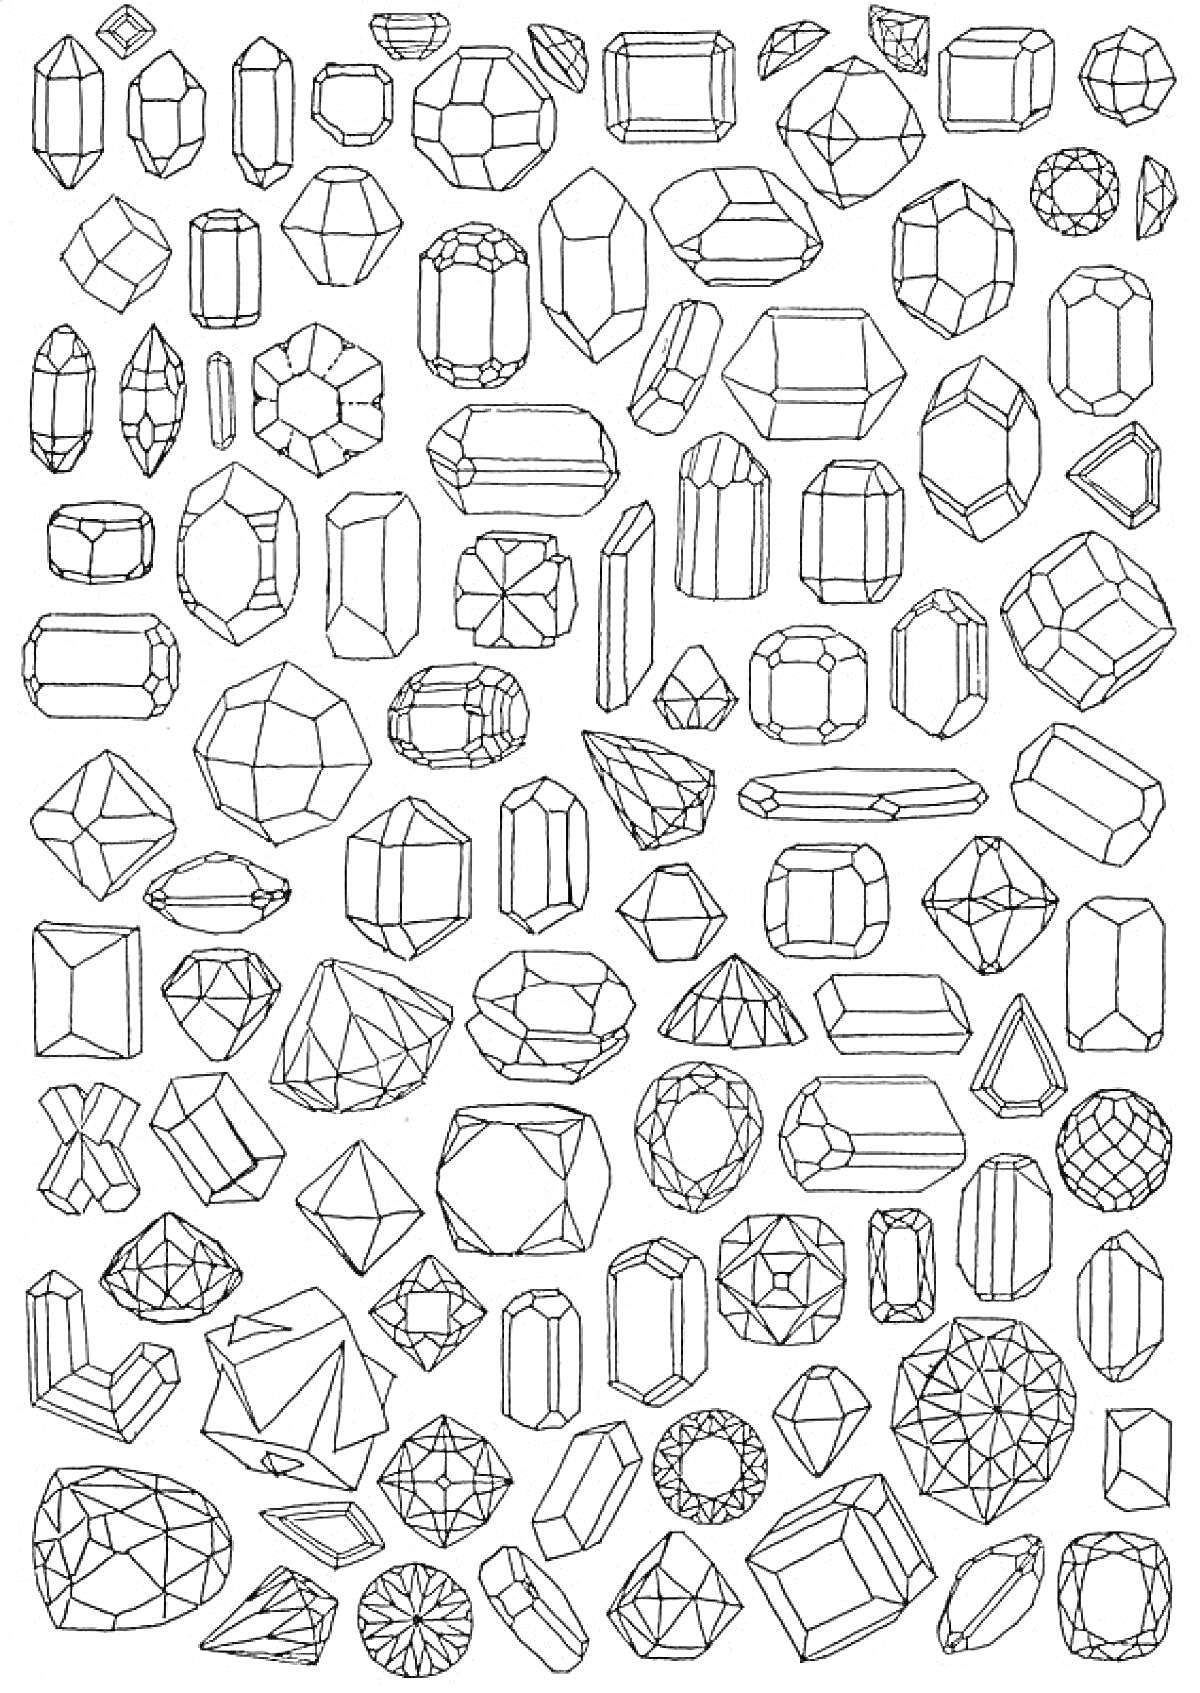 Раскраска Драгоценные камни, состоящие из различных форм и огранок, включая бриллиант, изумруд, овал, багет, круг, сердце, груша, триллиант и маркиз.